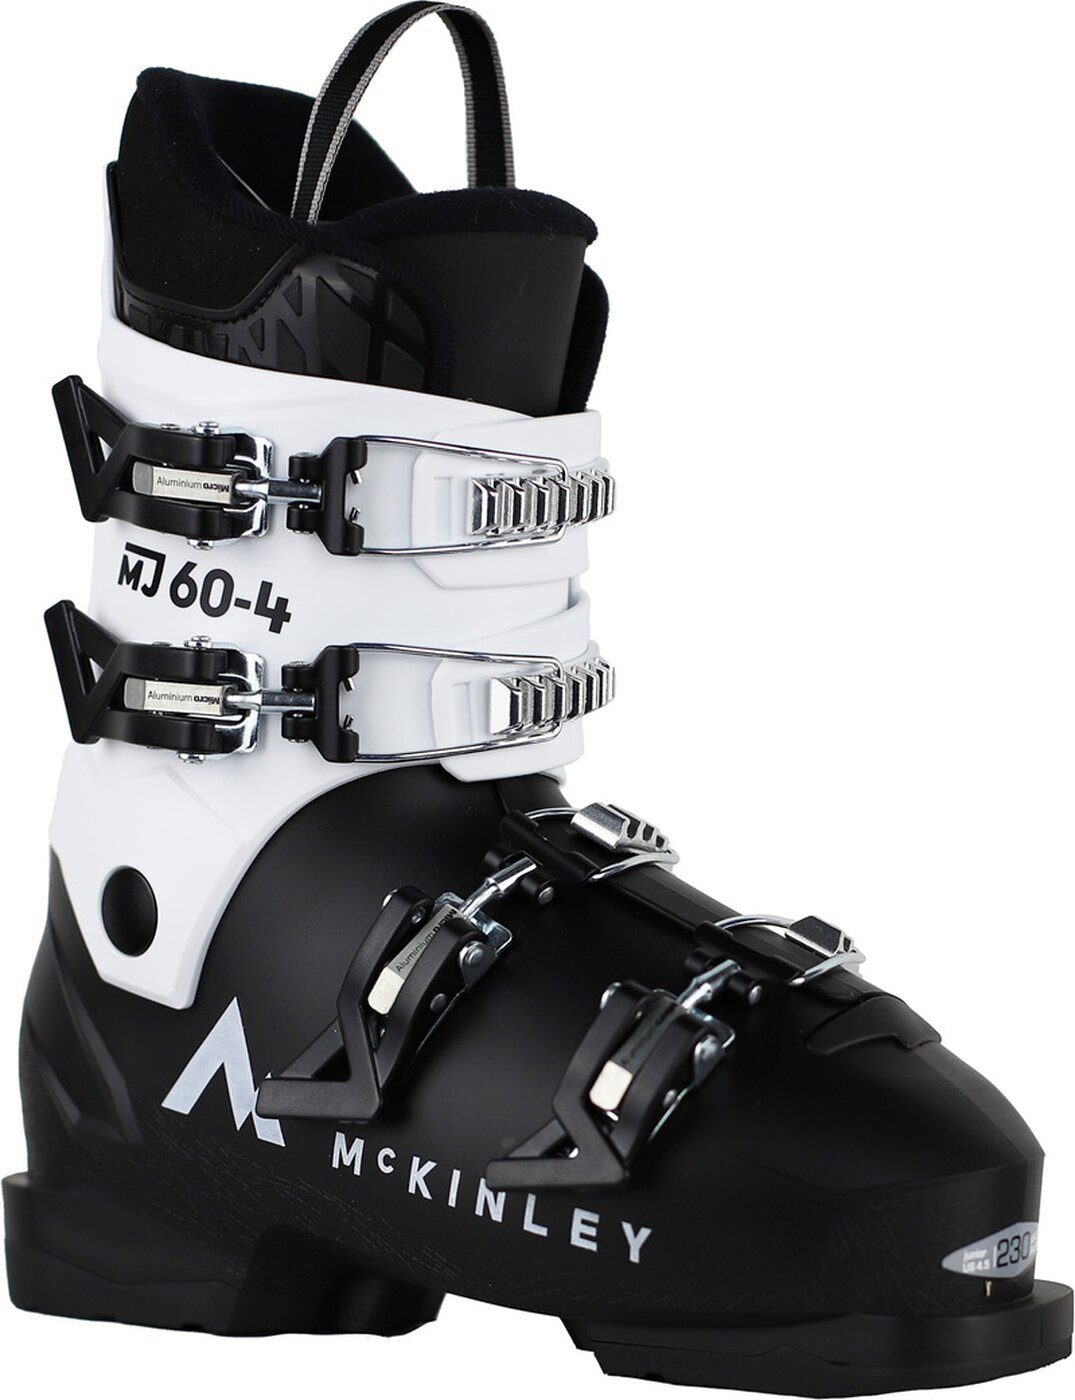 Ki.-Skistiefel McKINLEY 902 MJ60-4 Skischuh BLACK/WHITE